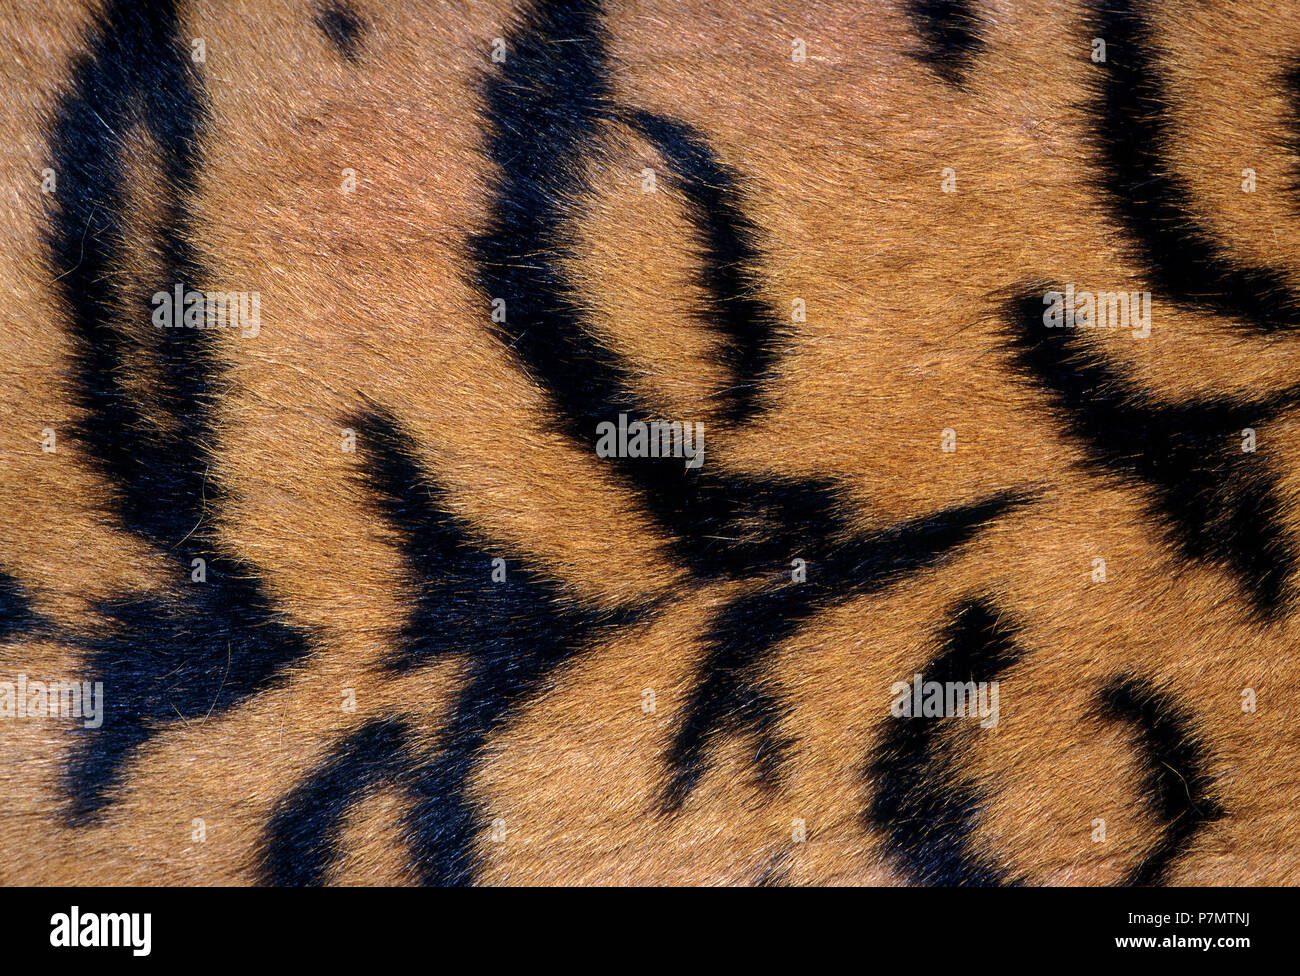 Fur of Sumatran Tiger (Panthera tigris sumatrae) Stock Photo